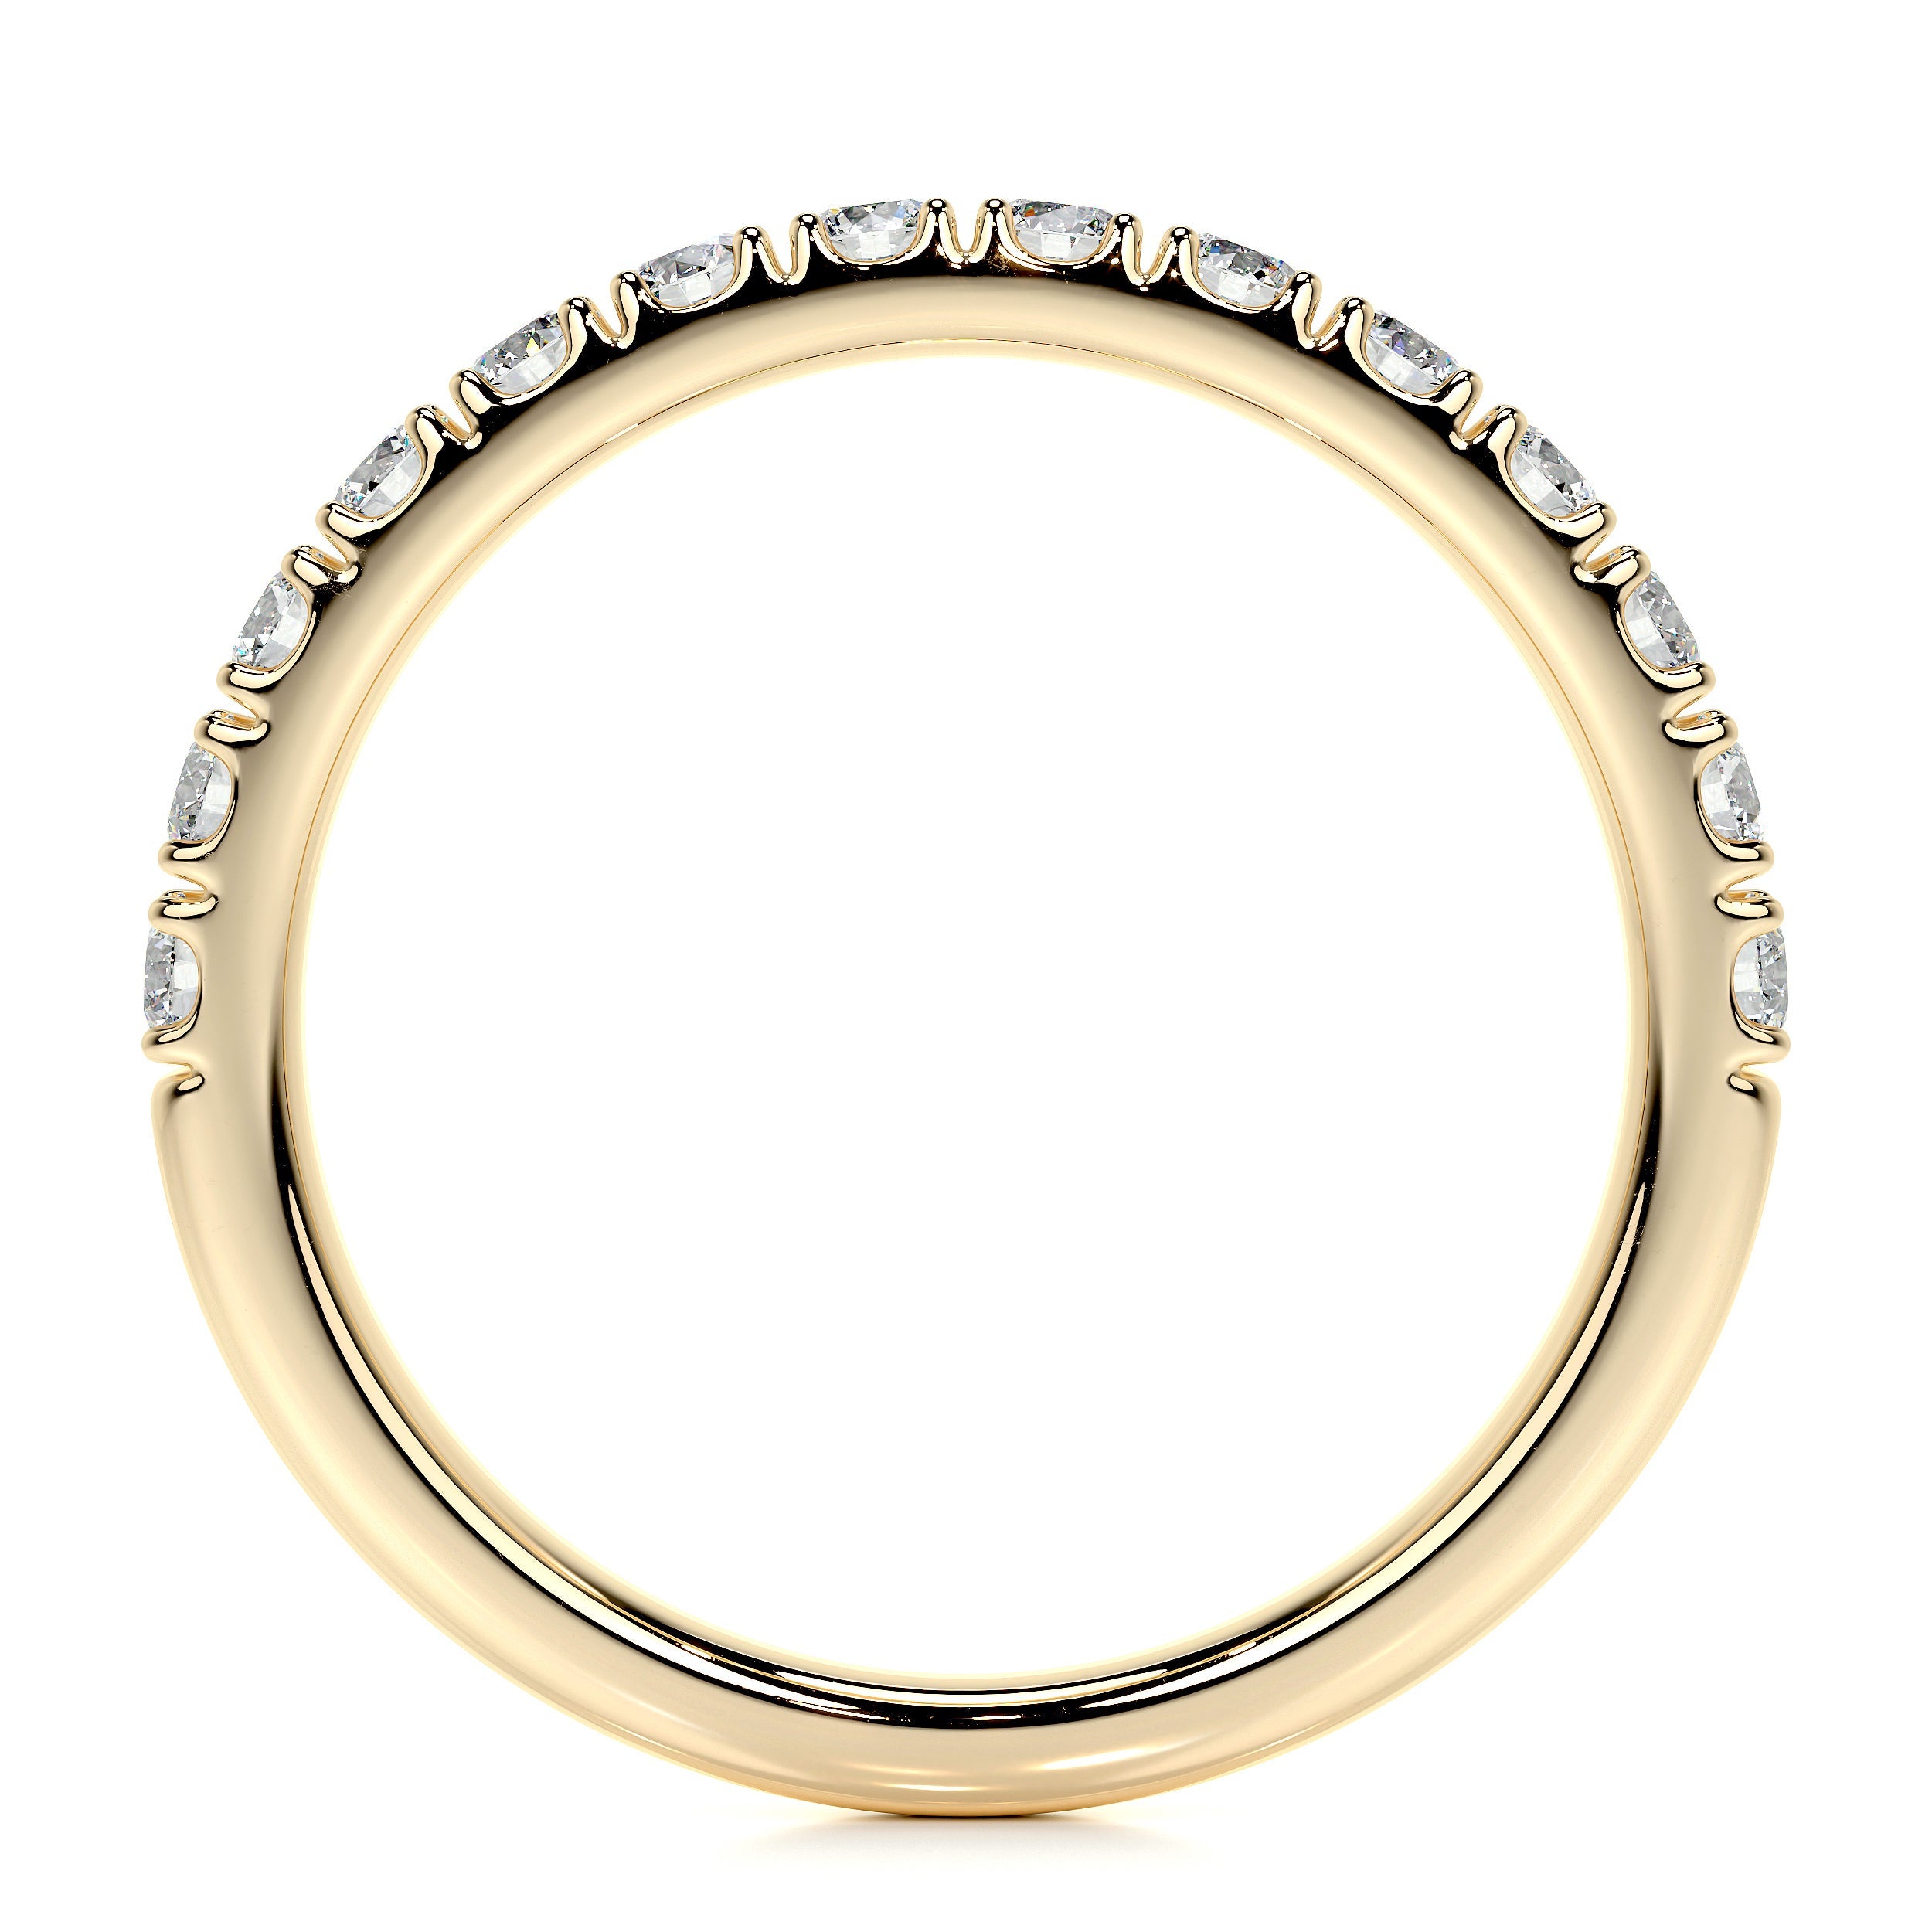 Blair Lab Grown Diamond Wedding Ring   (0.5 Carat) -18K Yellow Gold (RTS)